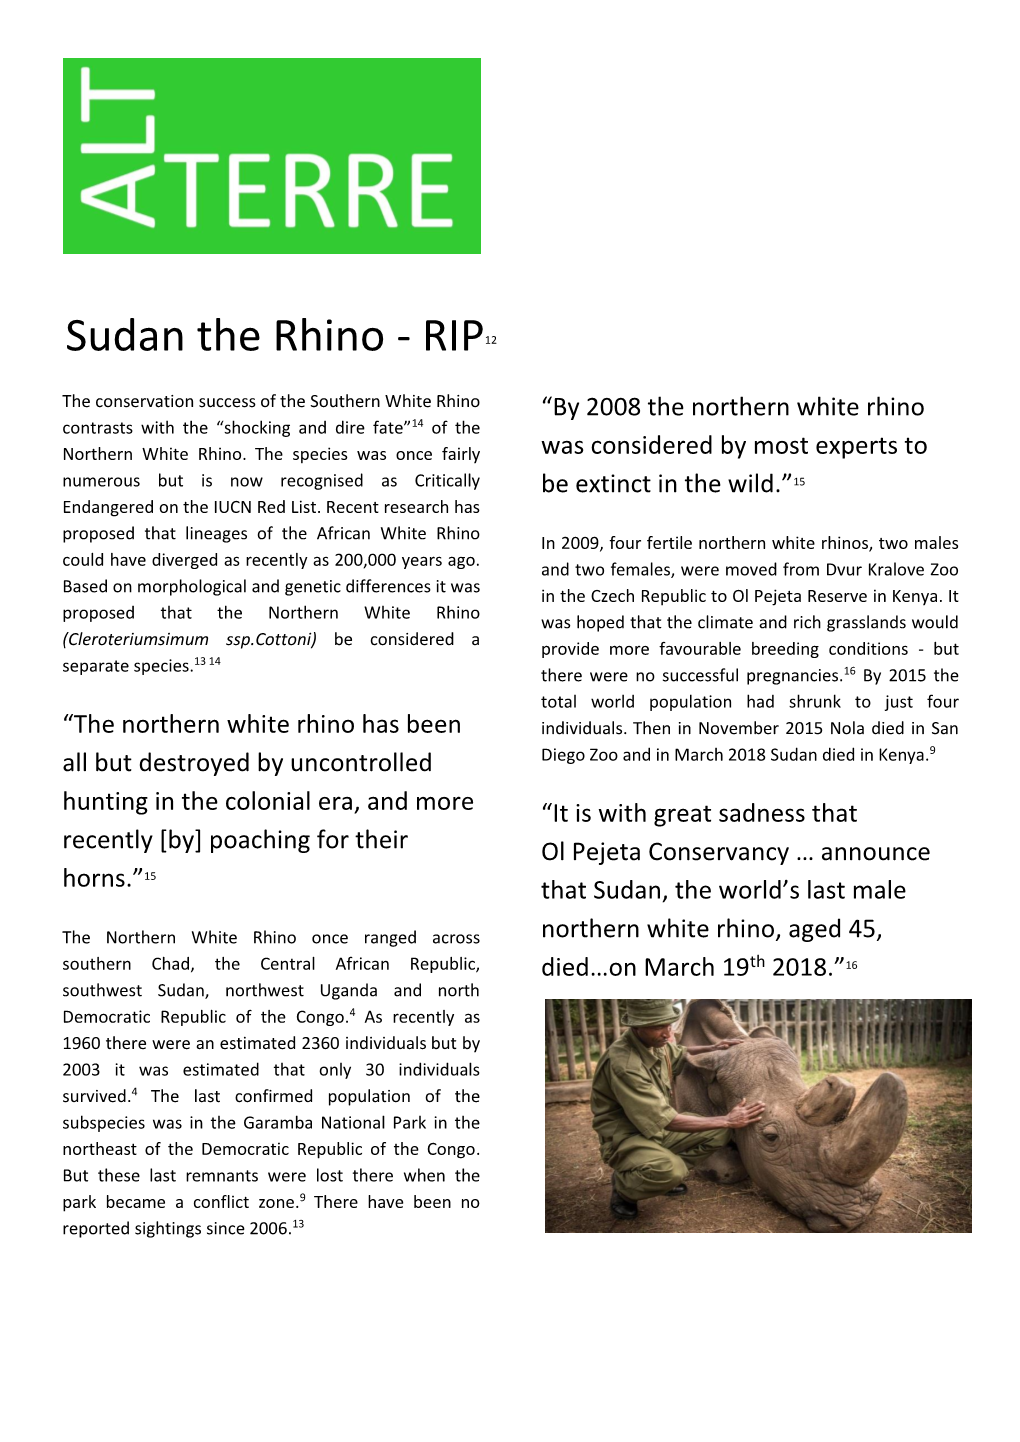 Sudan the Rhino - RIP12